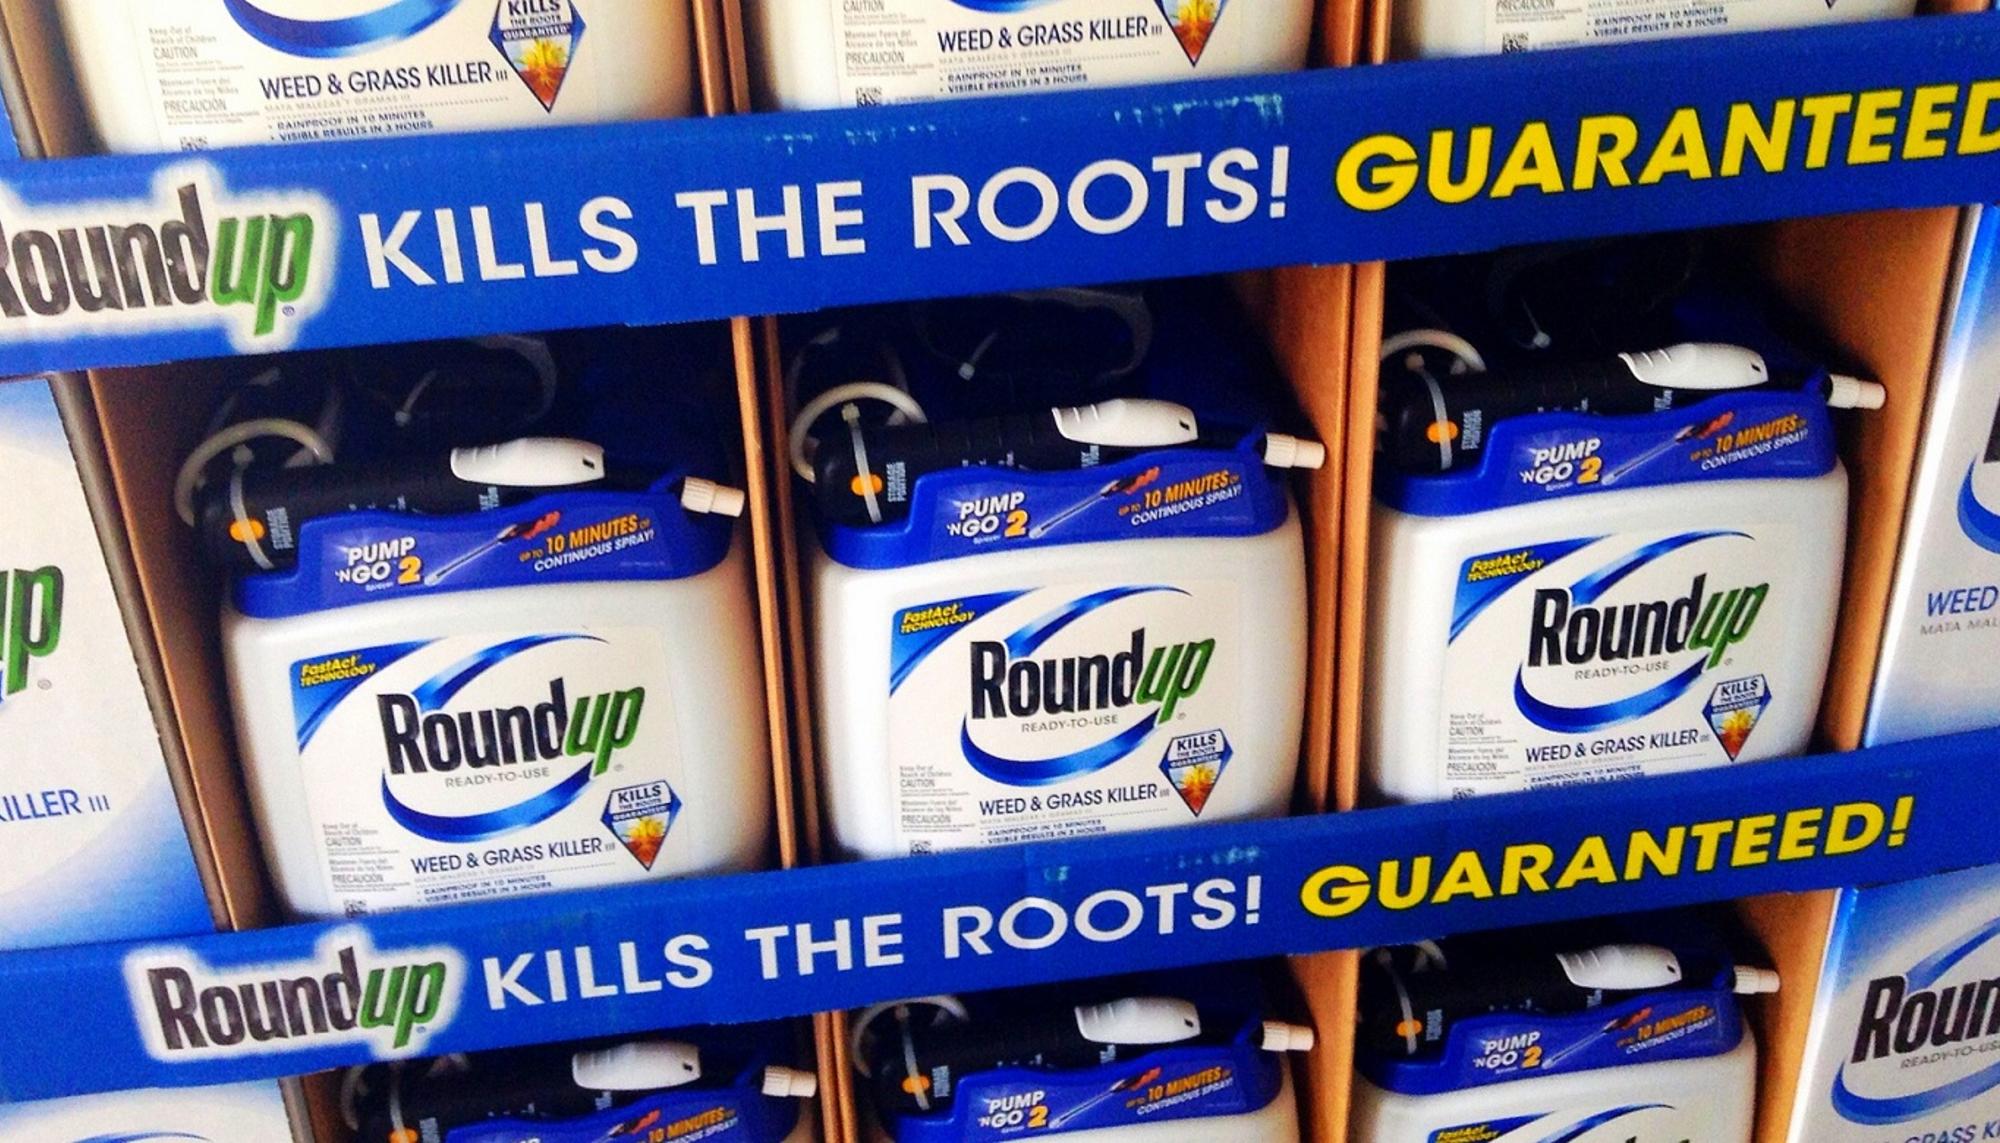 RoundUp de Monsanto glifosato